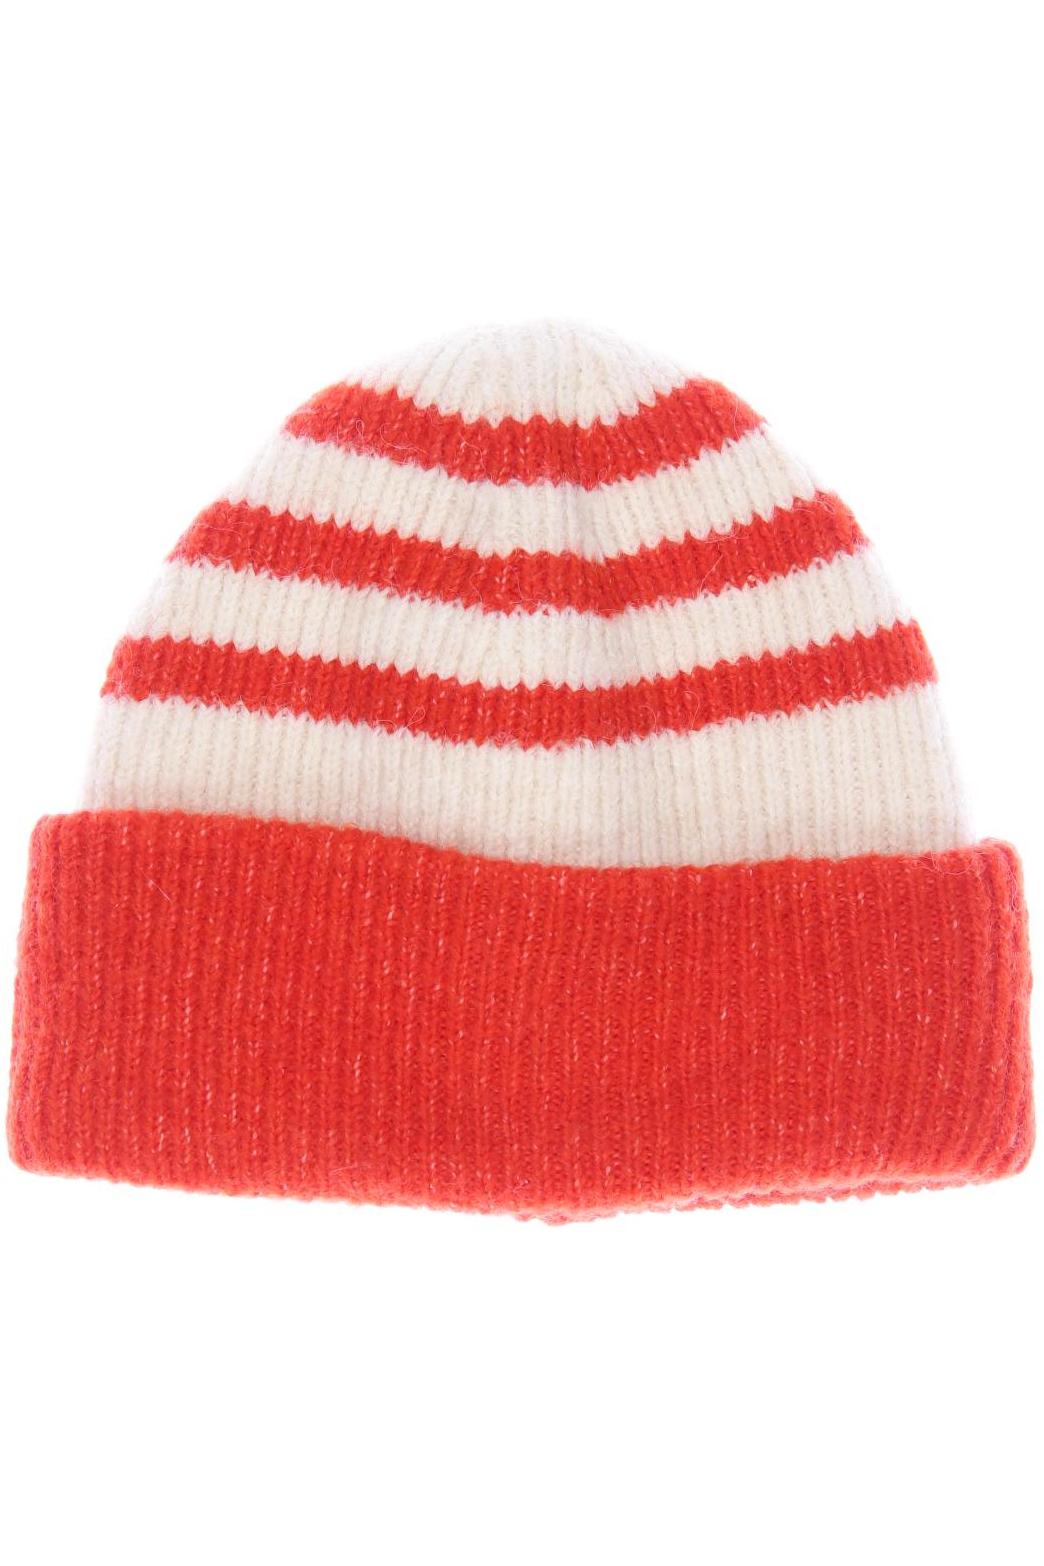 ZARA Damen Hut/Mütze, rot von ZARA